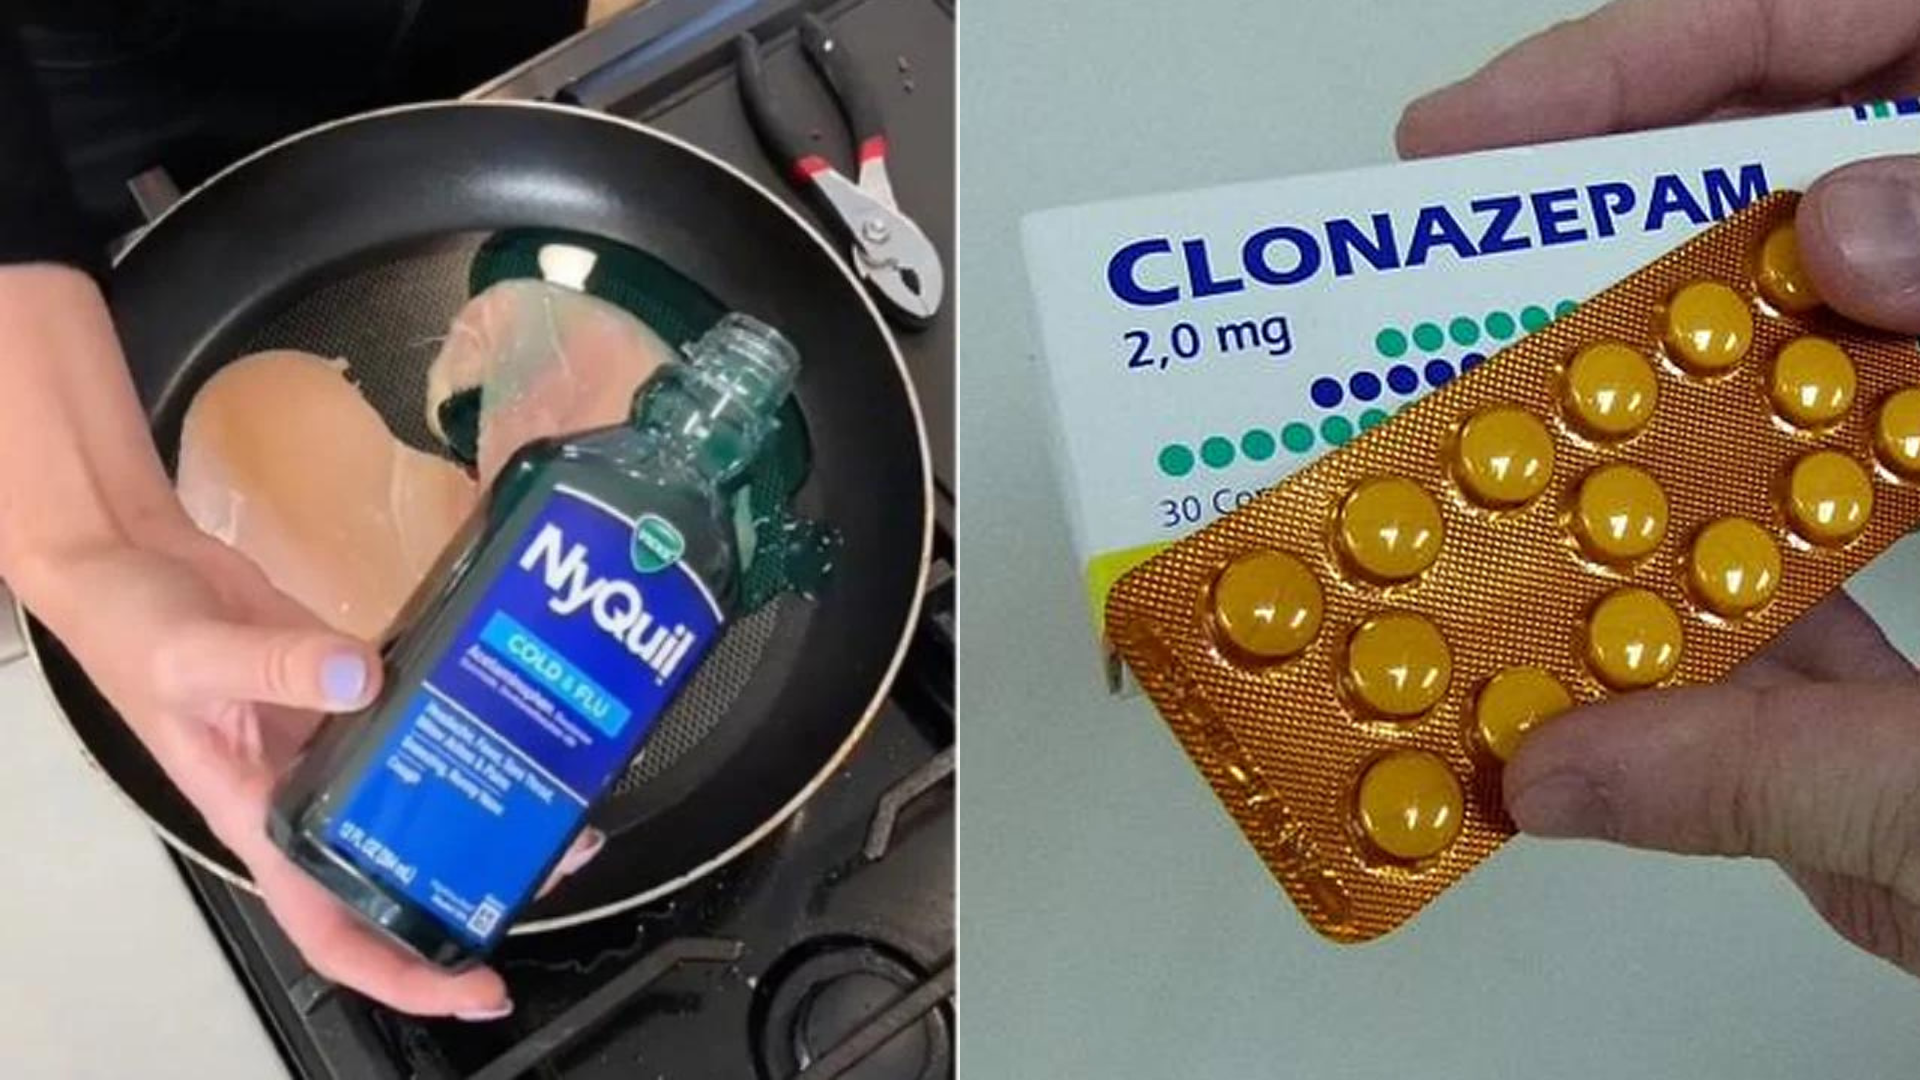 Reto clonazepam y otros desafíos de internet que promueven el consumo no supervisado de medicamentos